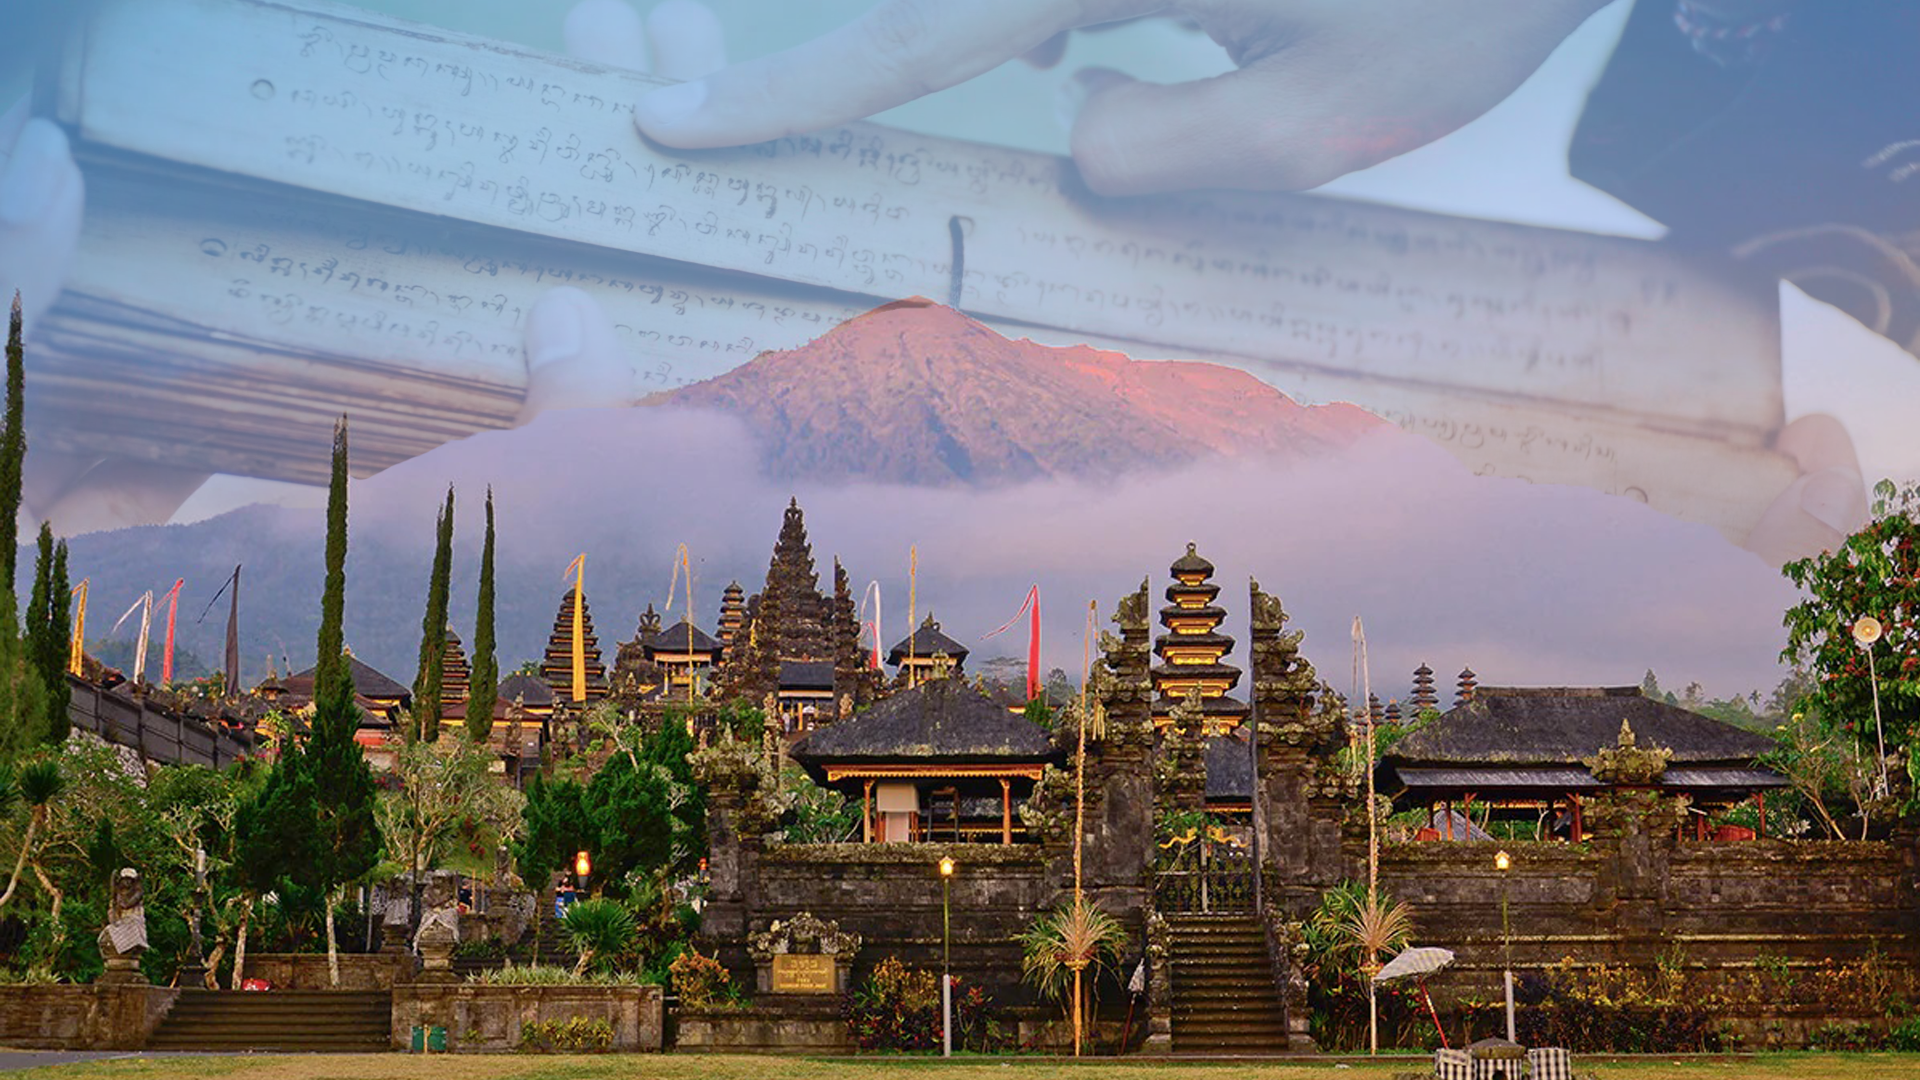 Rencana Fasilitasi dan Kolaborasi antara Balai Bahasa Provinsi Bali dan Green School Bali